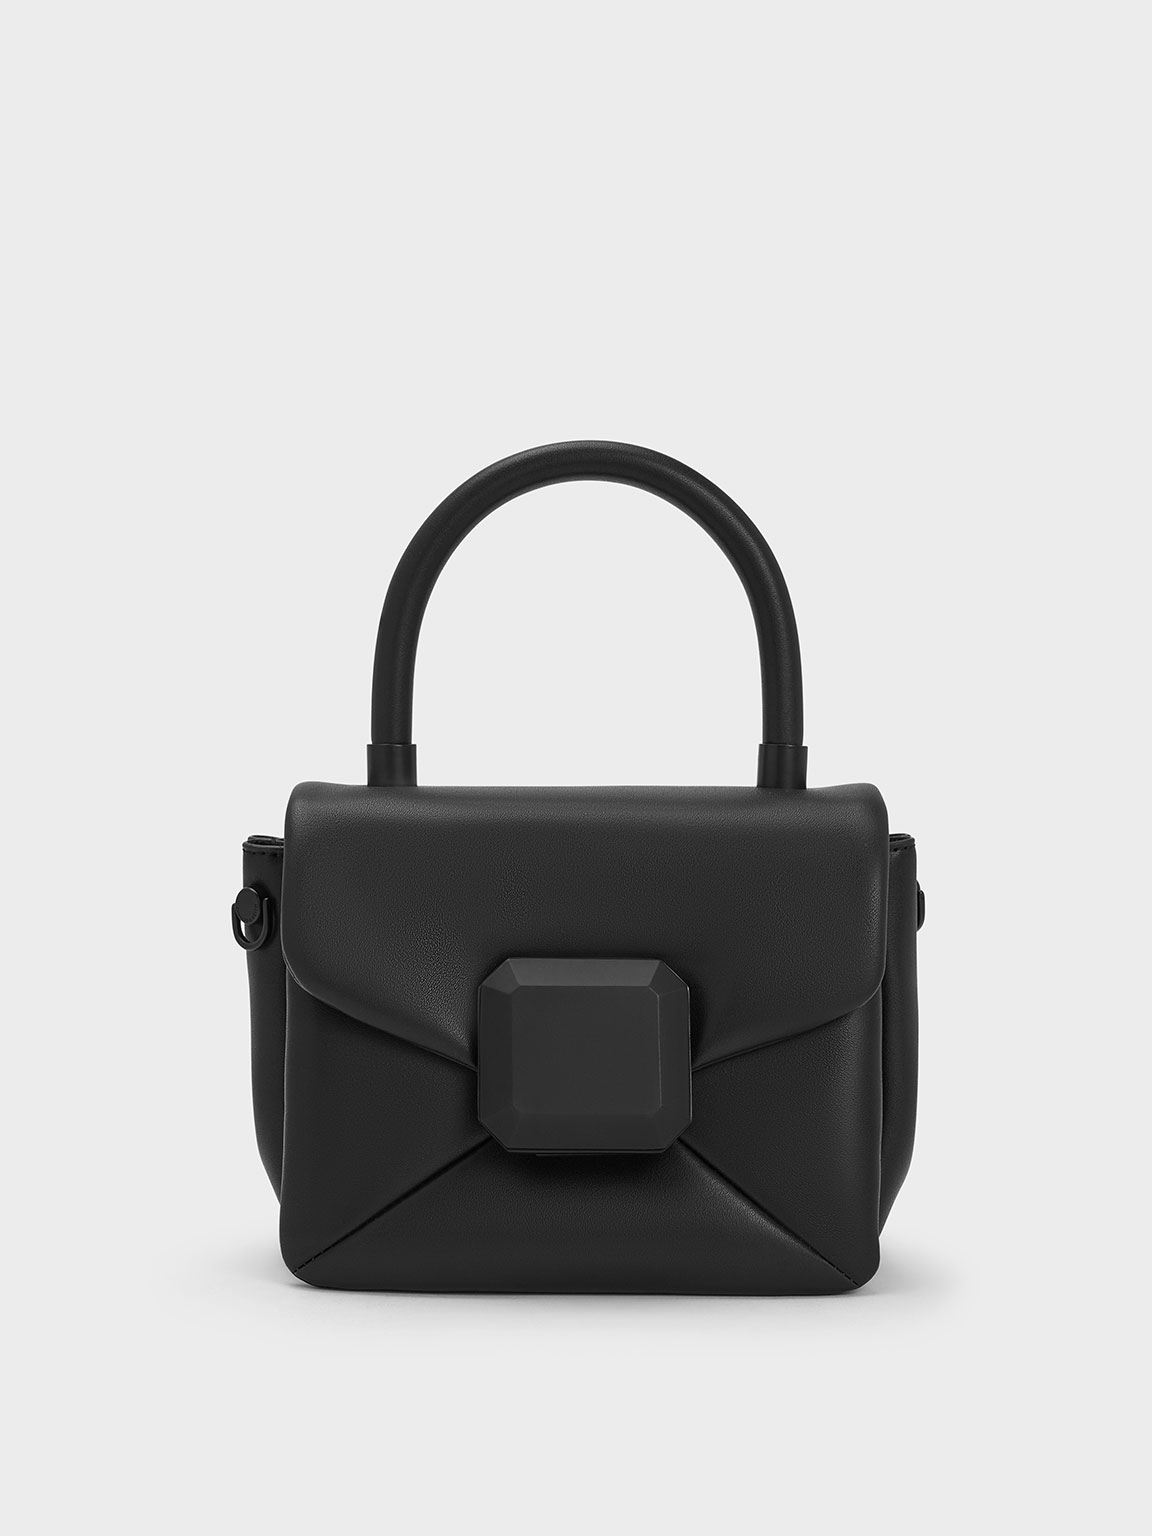 Geometric Push-Lock Top Handle Bag